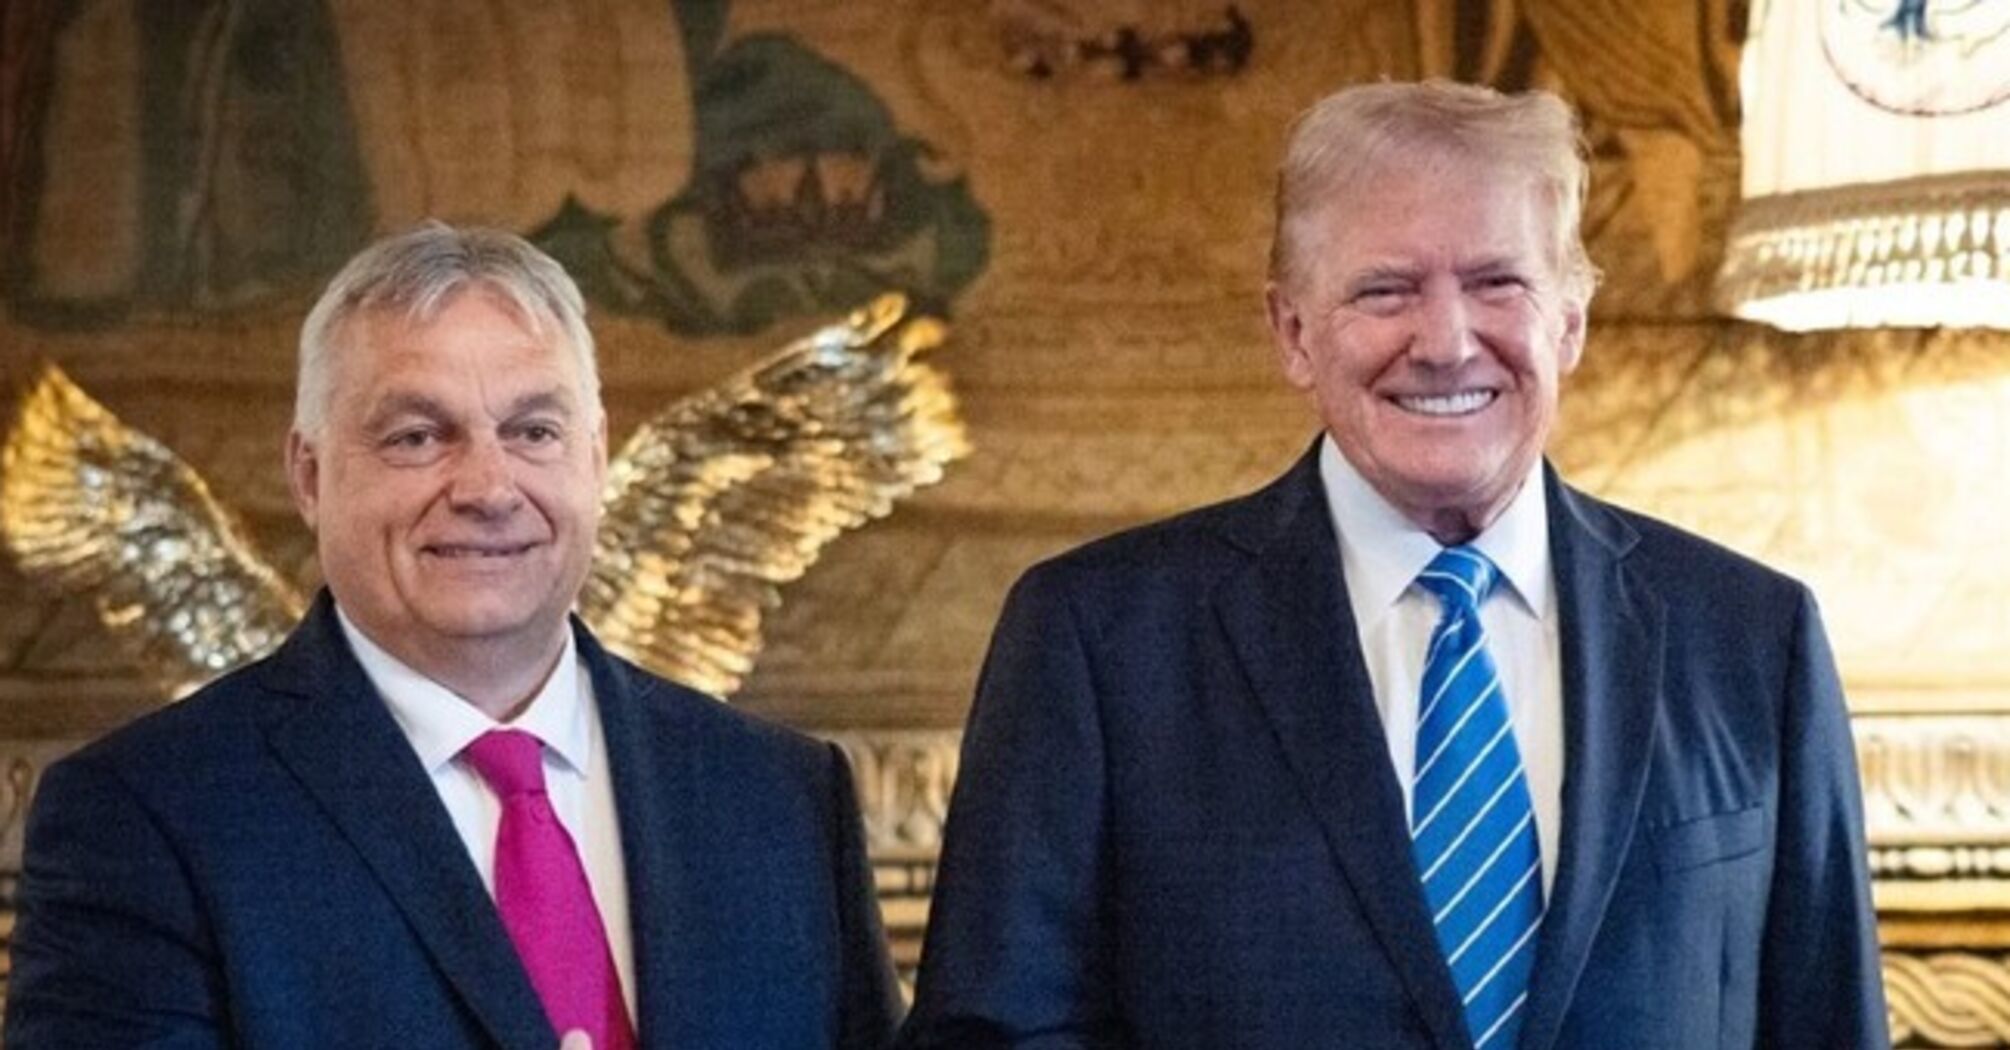 Орбан продовжує боротися за капітуляцію України